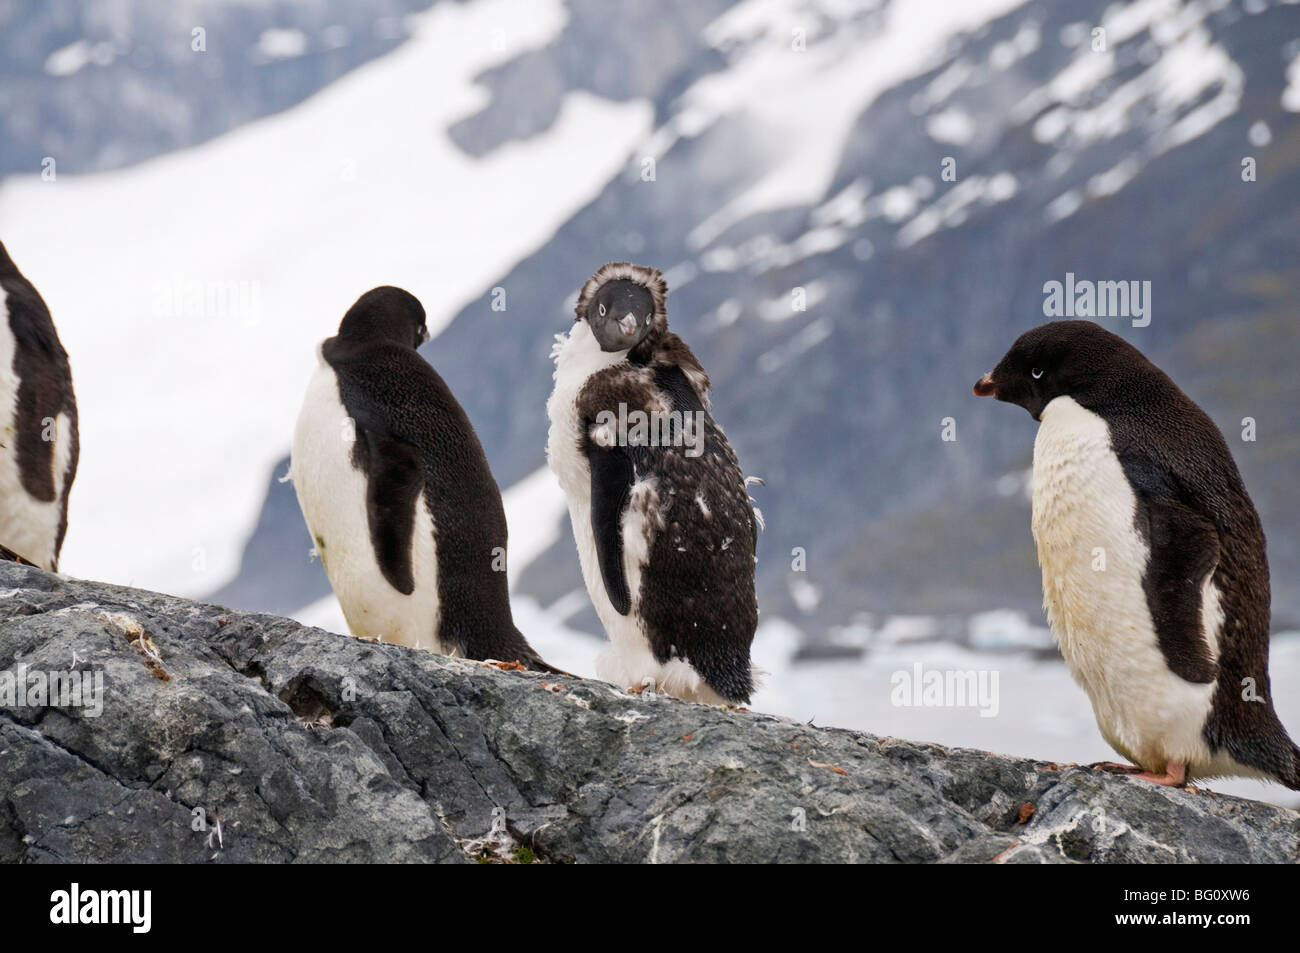 La mue, les manchots Adélie Yalour Island, Péninsule Antarctique, l'Antarctique, régions polaires Banque D'Images